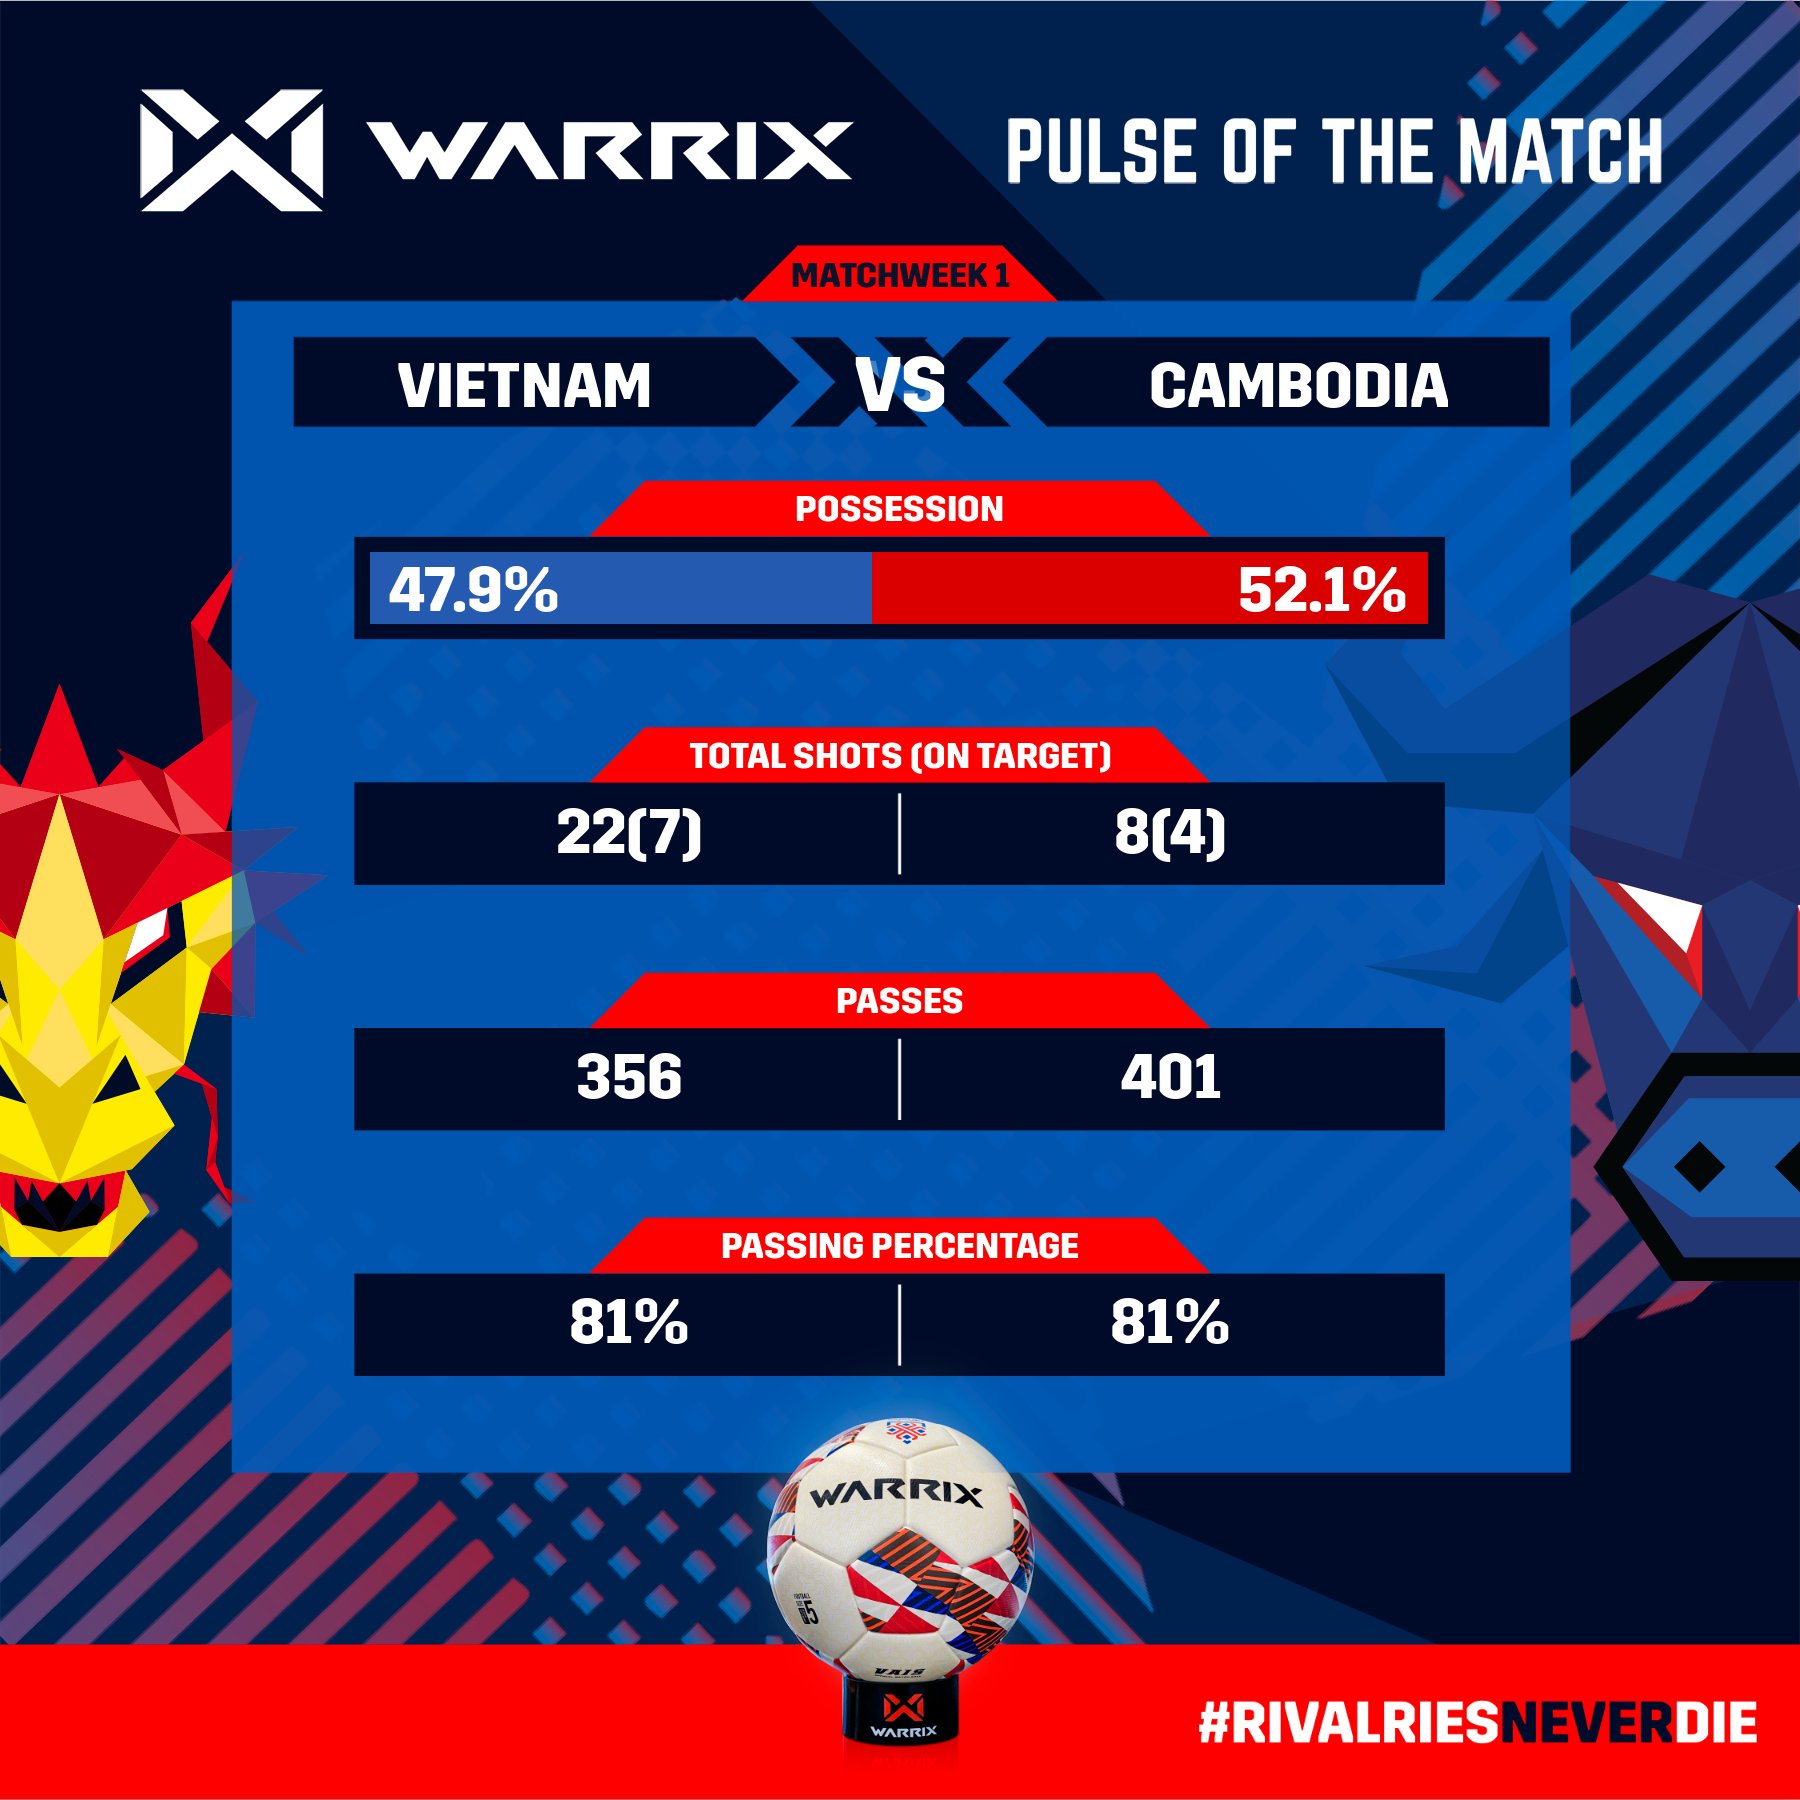 Fan Campuchia: Dù thất bại nhưng chúng ta đã ngăn cản Việt Nam giành ngôi đầu bảng - Ảnh 1.